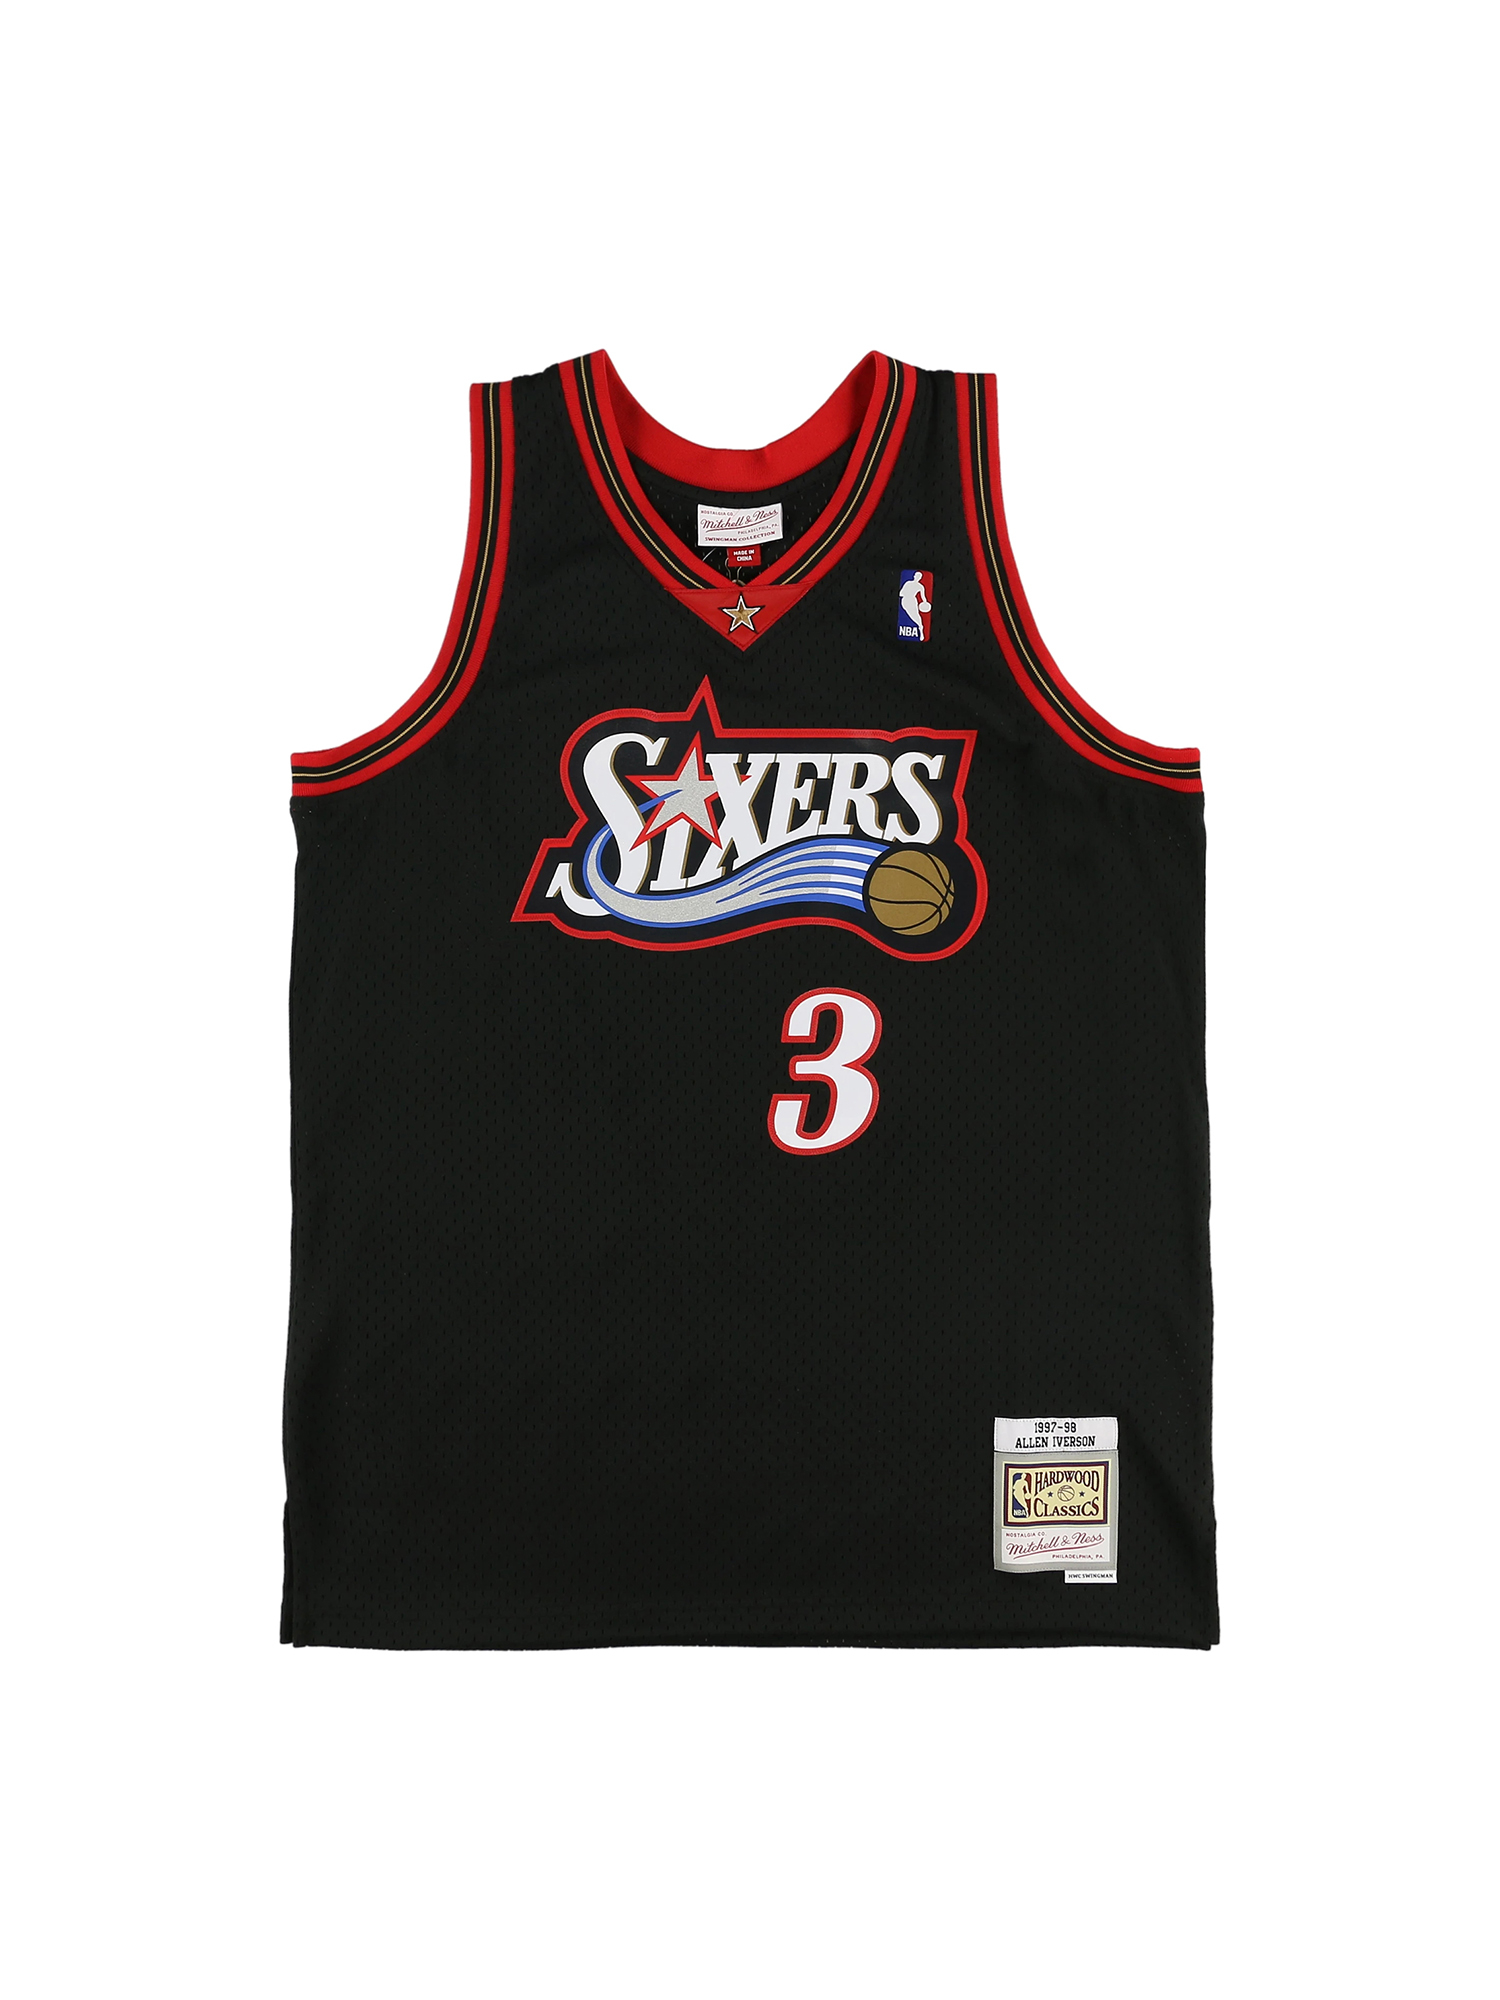 NBA 76ers IVERSON #3 アレン・アイバーソン ユニフォーム - スポーツ